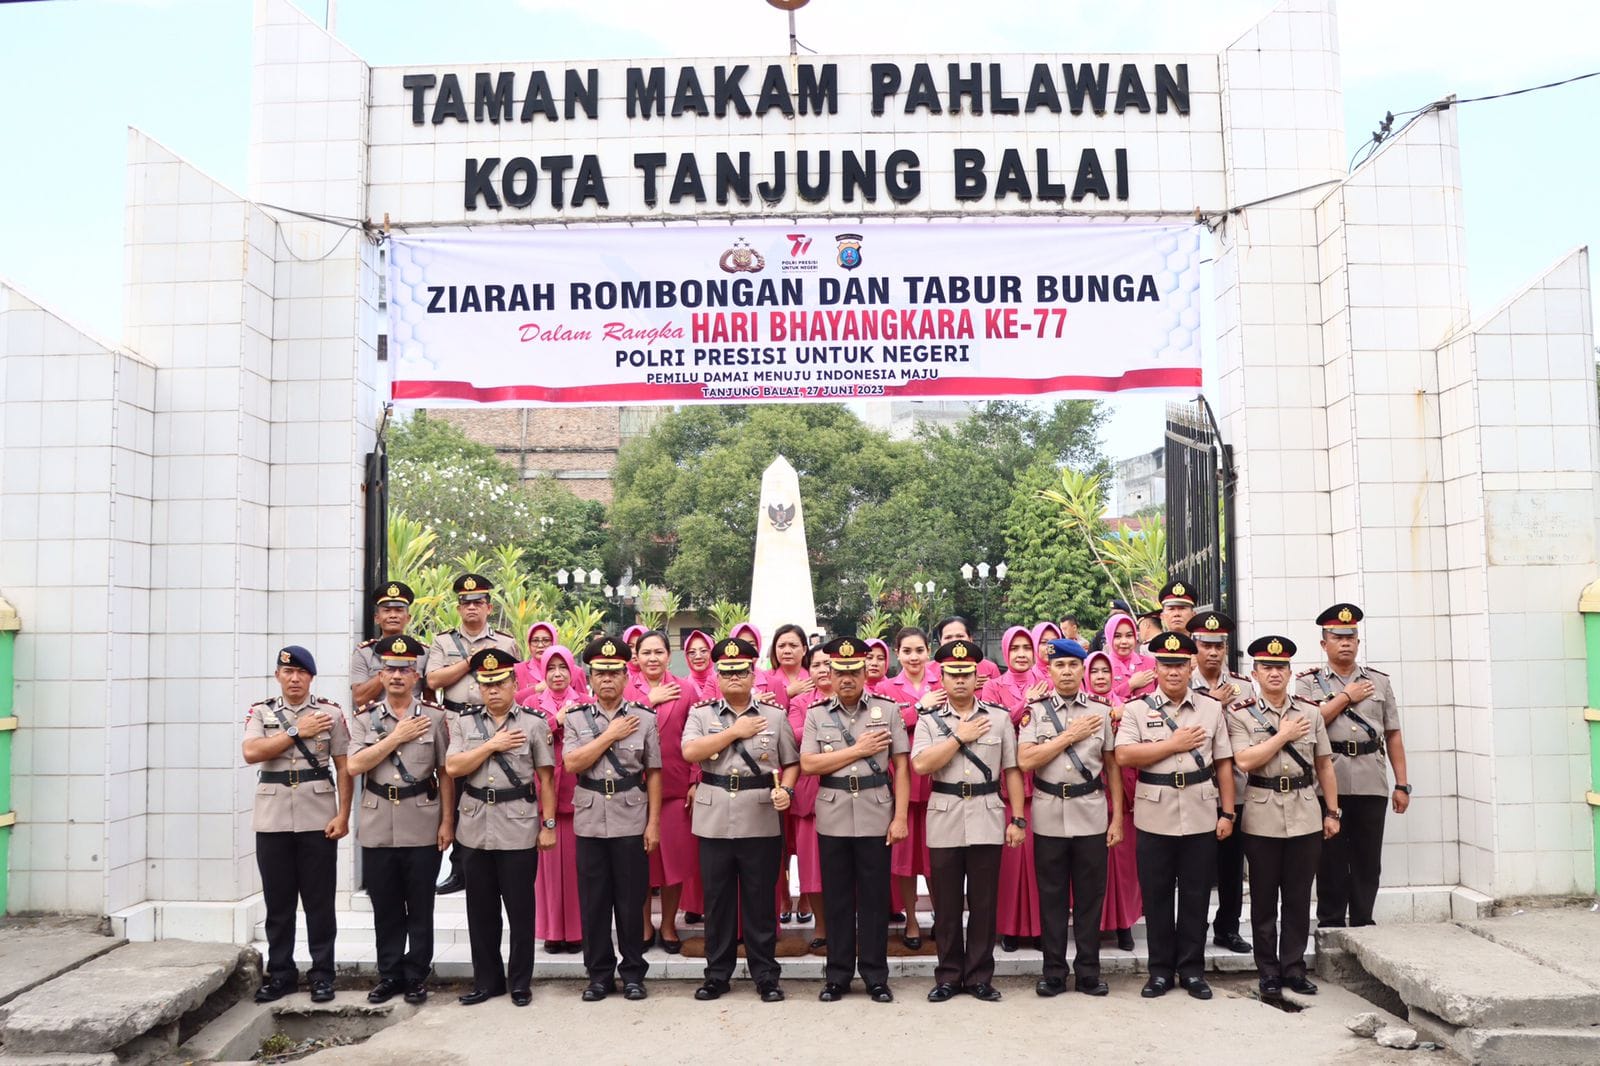 Sambut HUT Bhayangkara ke 77 Polres Tanjung Balai Melaksanakan Upacara Ziarah Rombongan dan Tabur Bunga di Makam Pahlawan